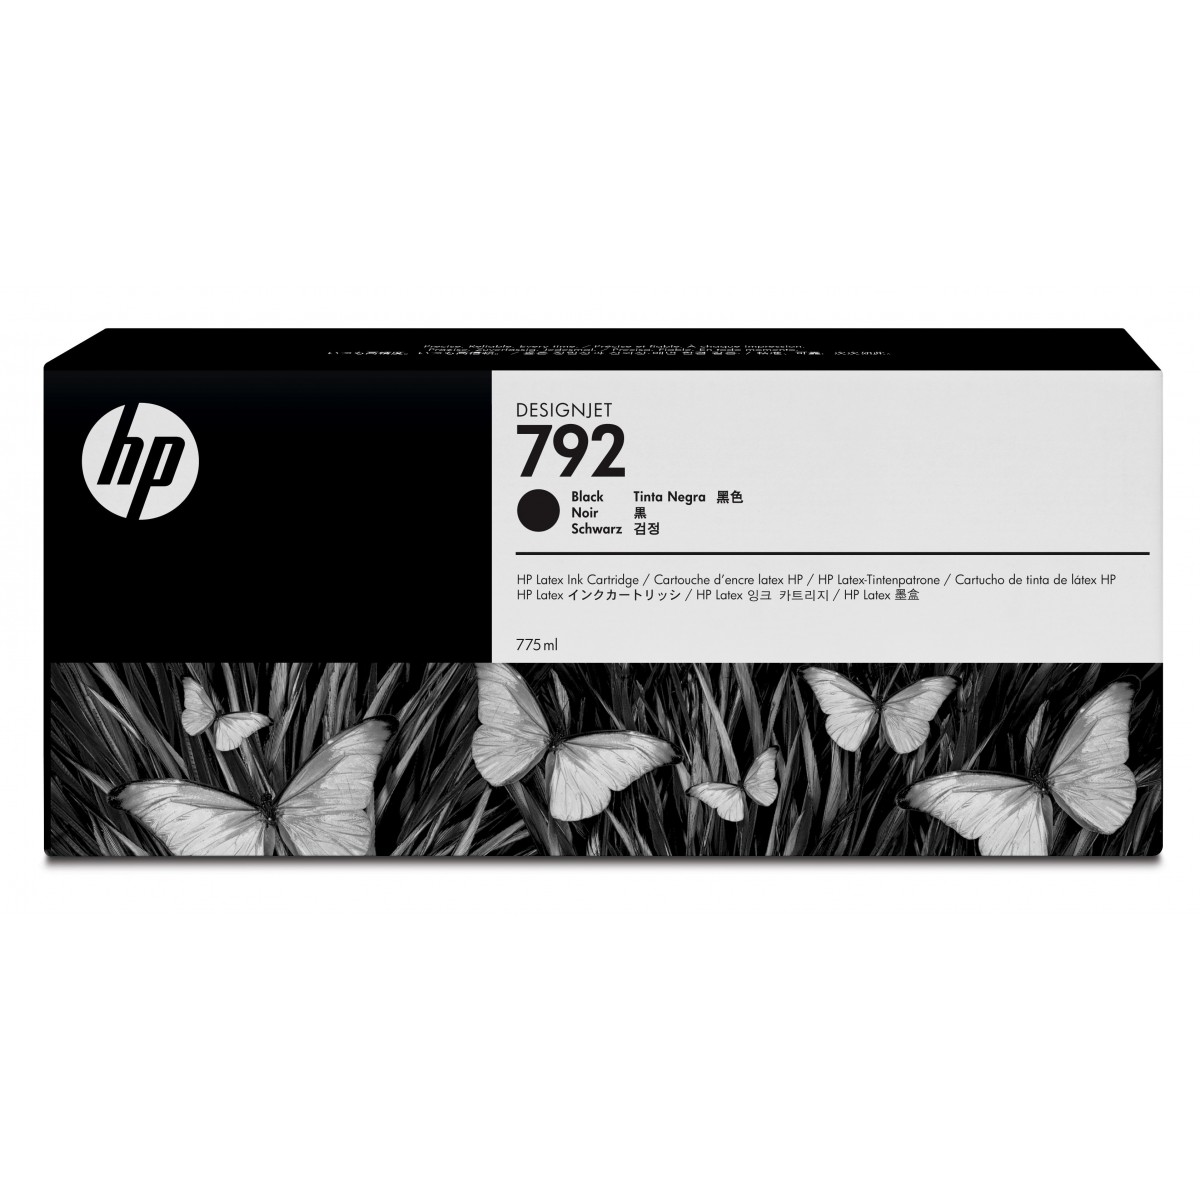 HP 792 - Original - Pigment-based ink - Black - HP - HP Latex 210 - 260 - 280 - 1 pc(s)